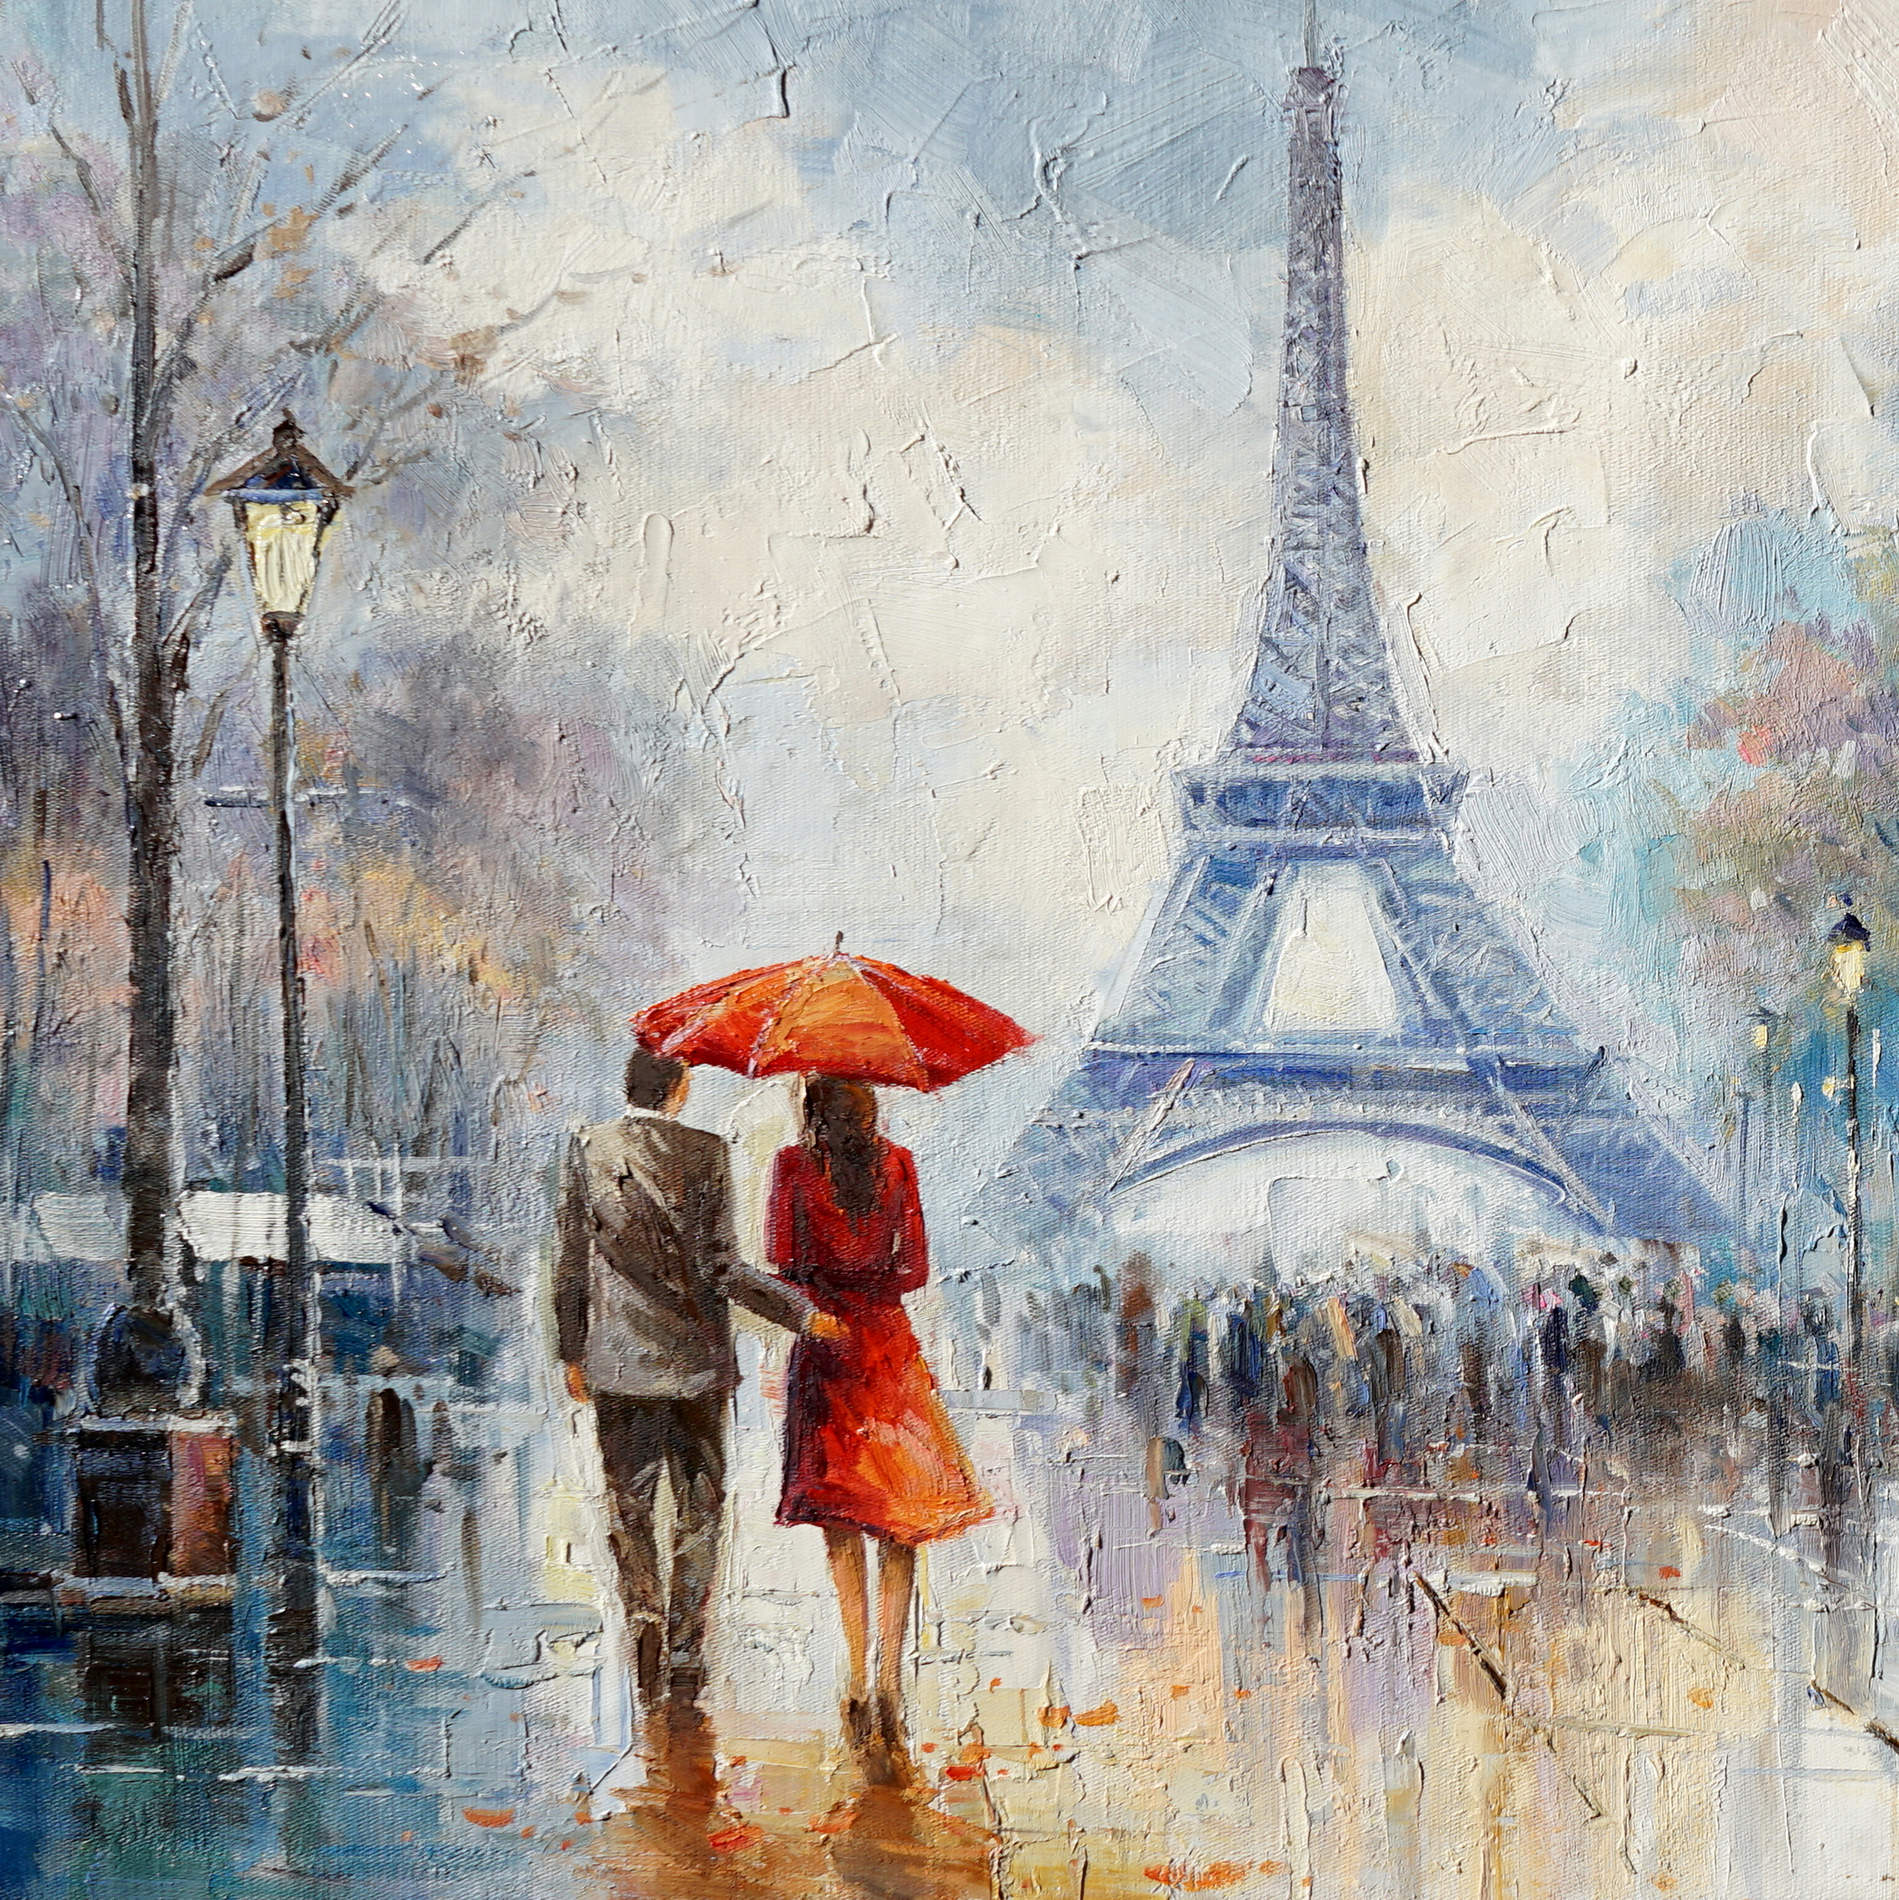 Dipinto a mano Parigi sotto la pioggia Torre Eiffel 60x120cm